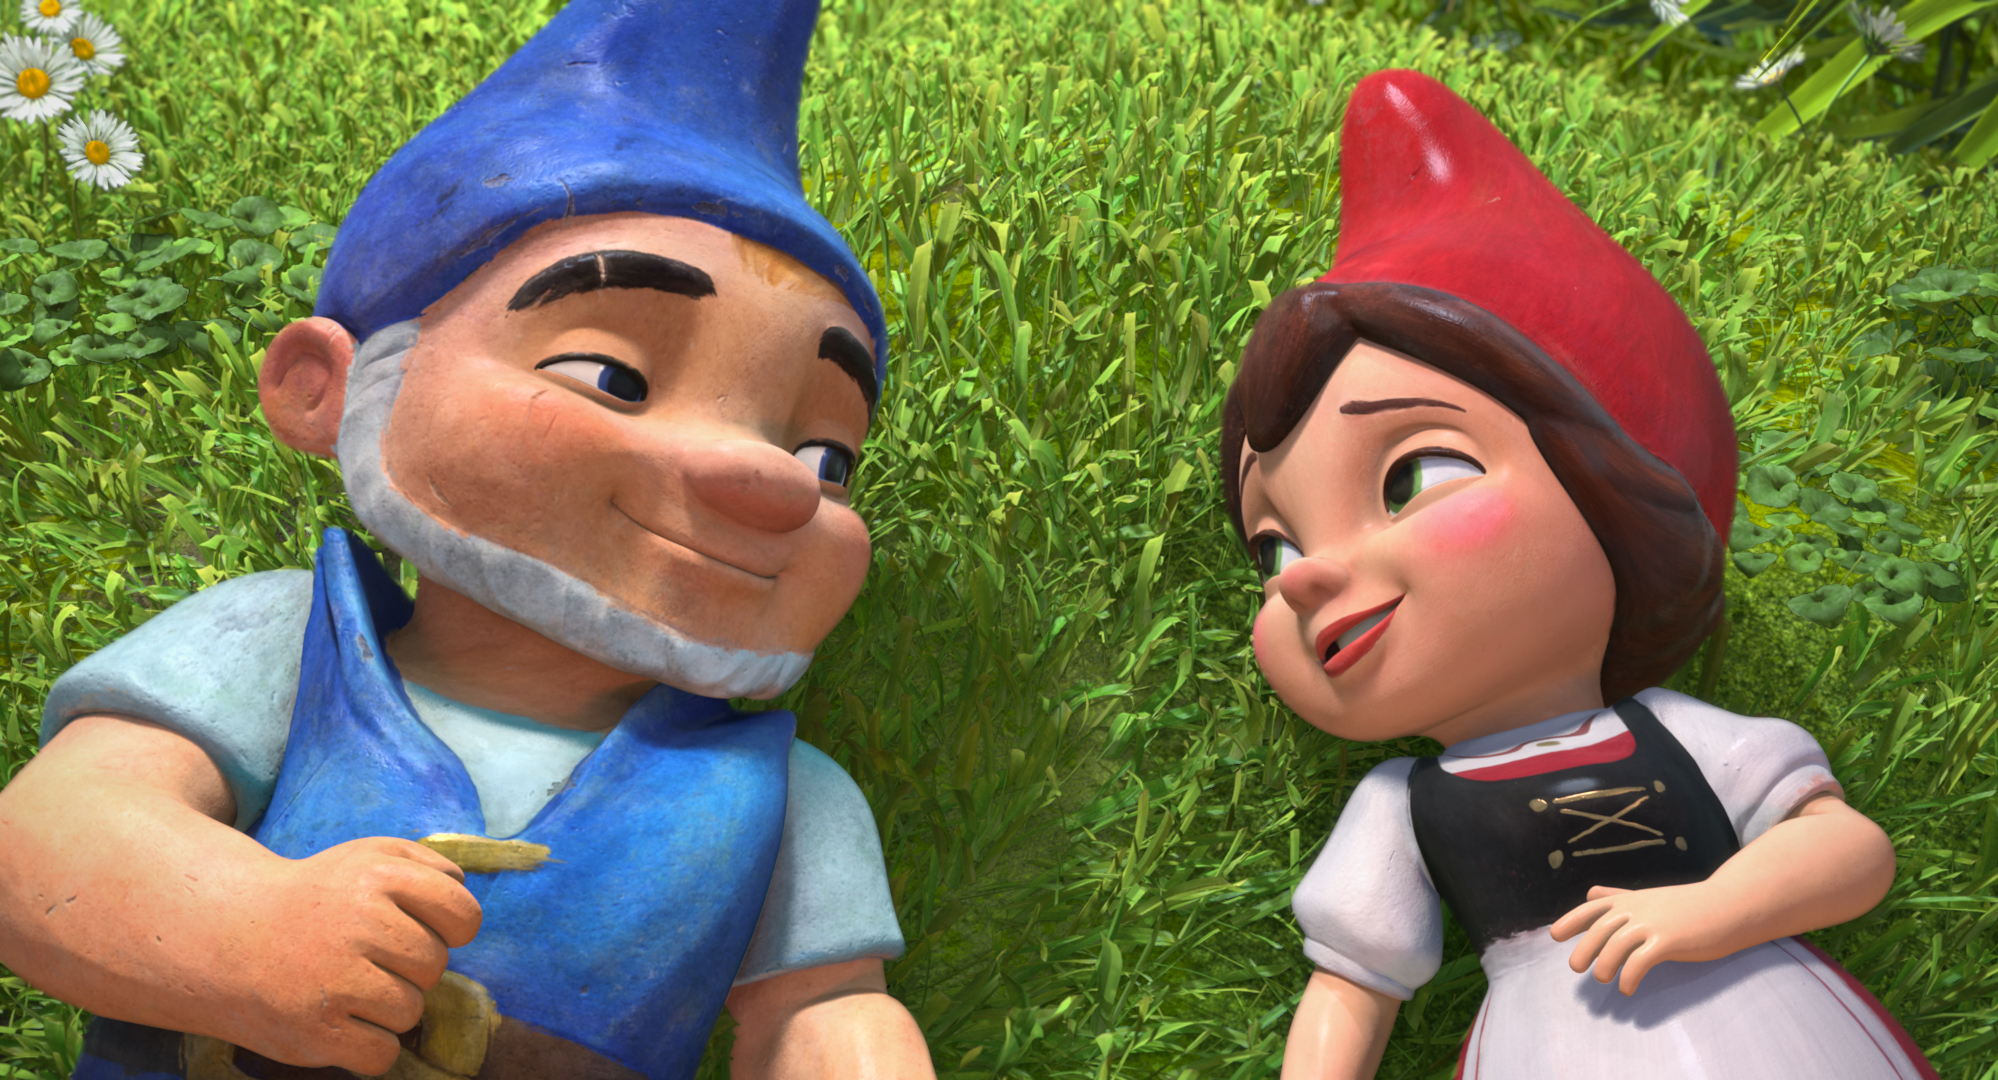 Gnomeo und Julia